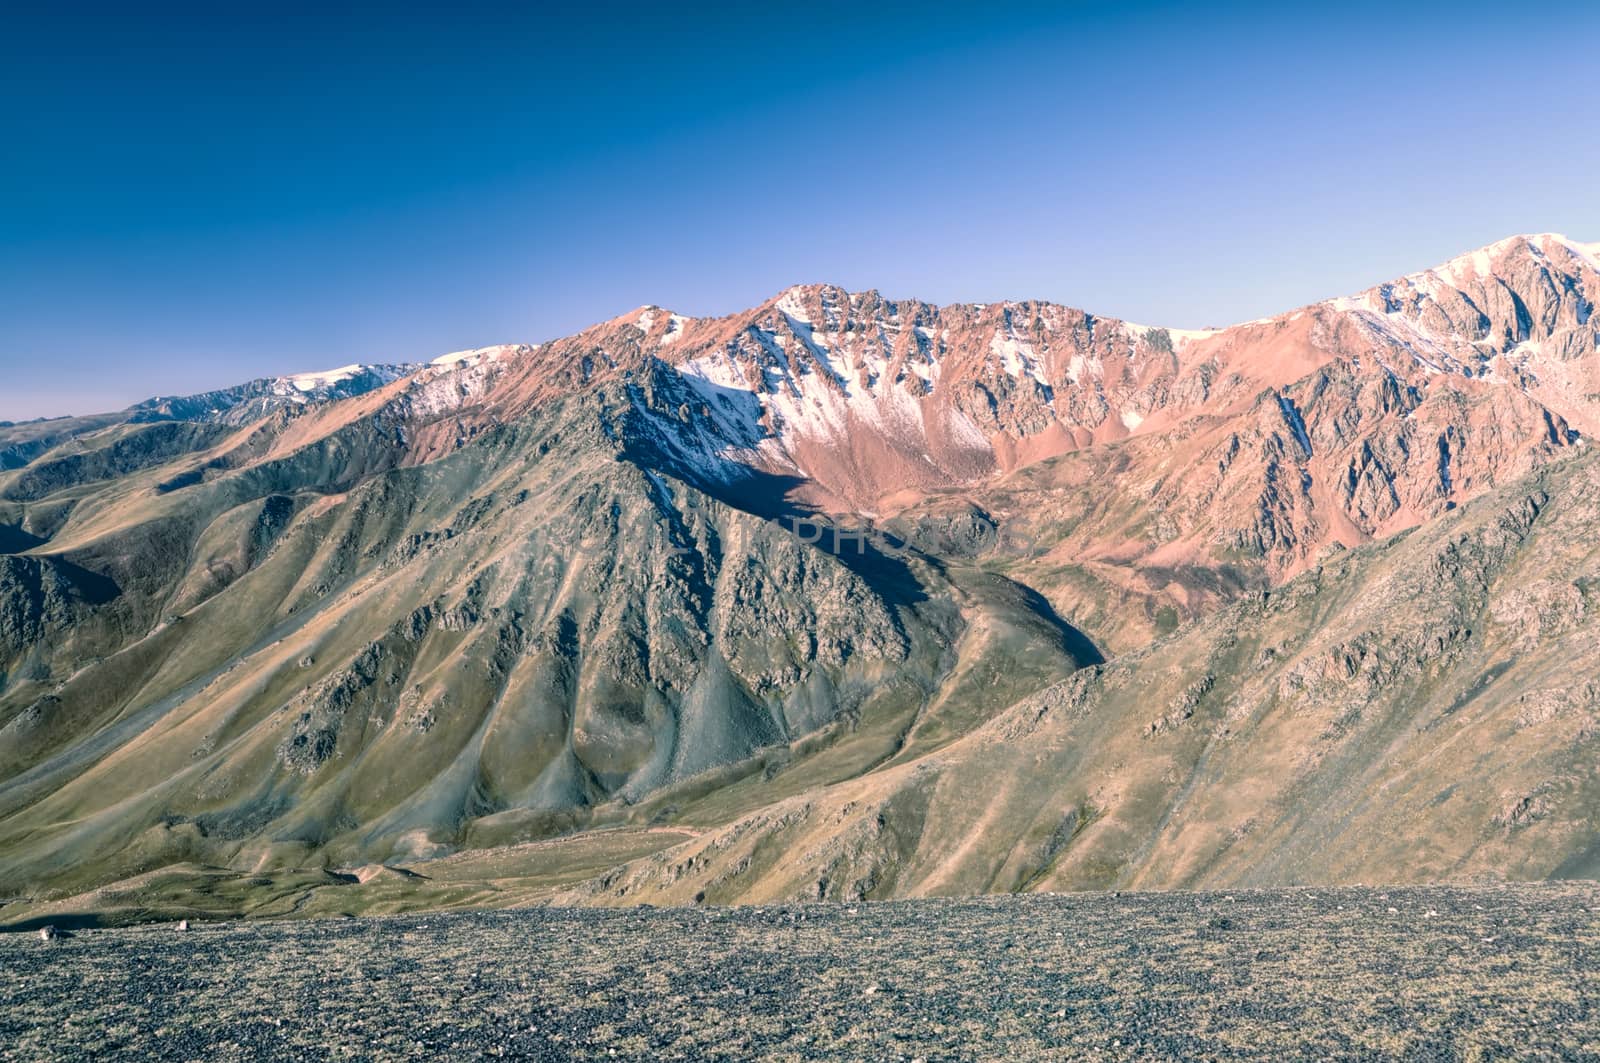 Landscape in Kyrgyzstan by MichalKnitl